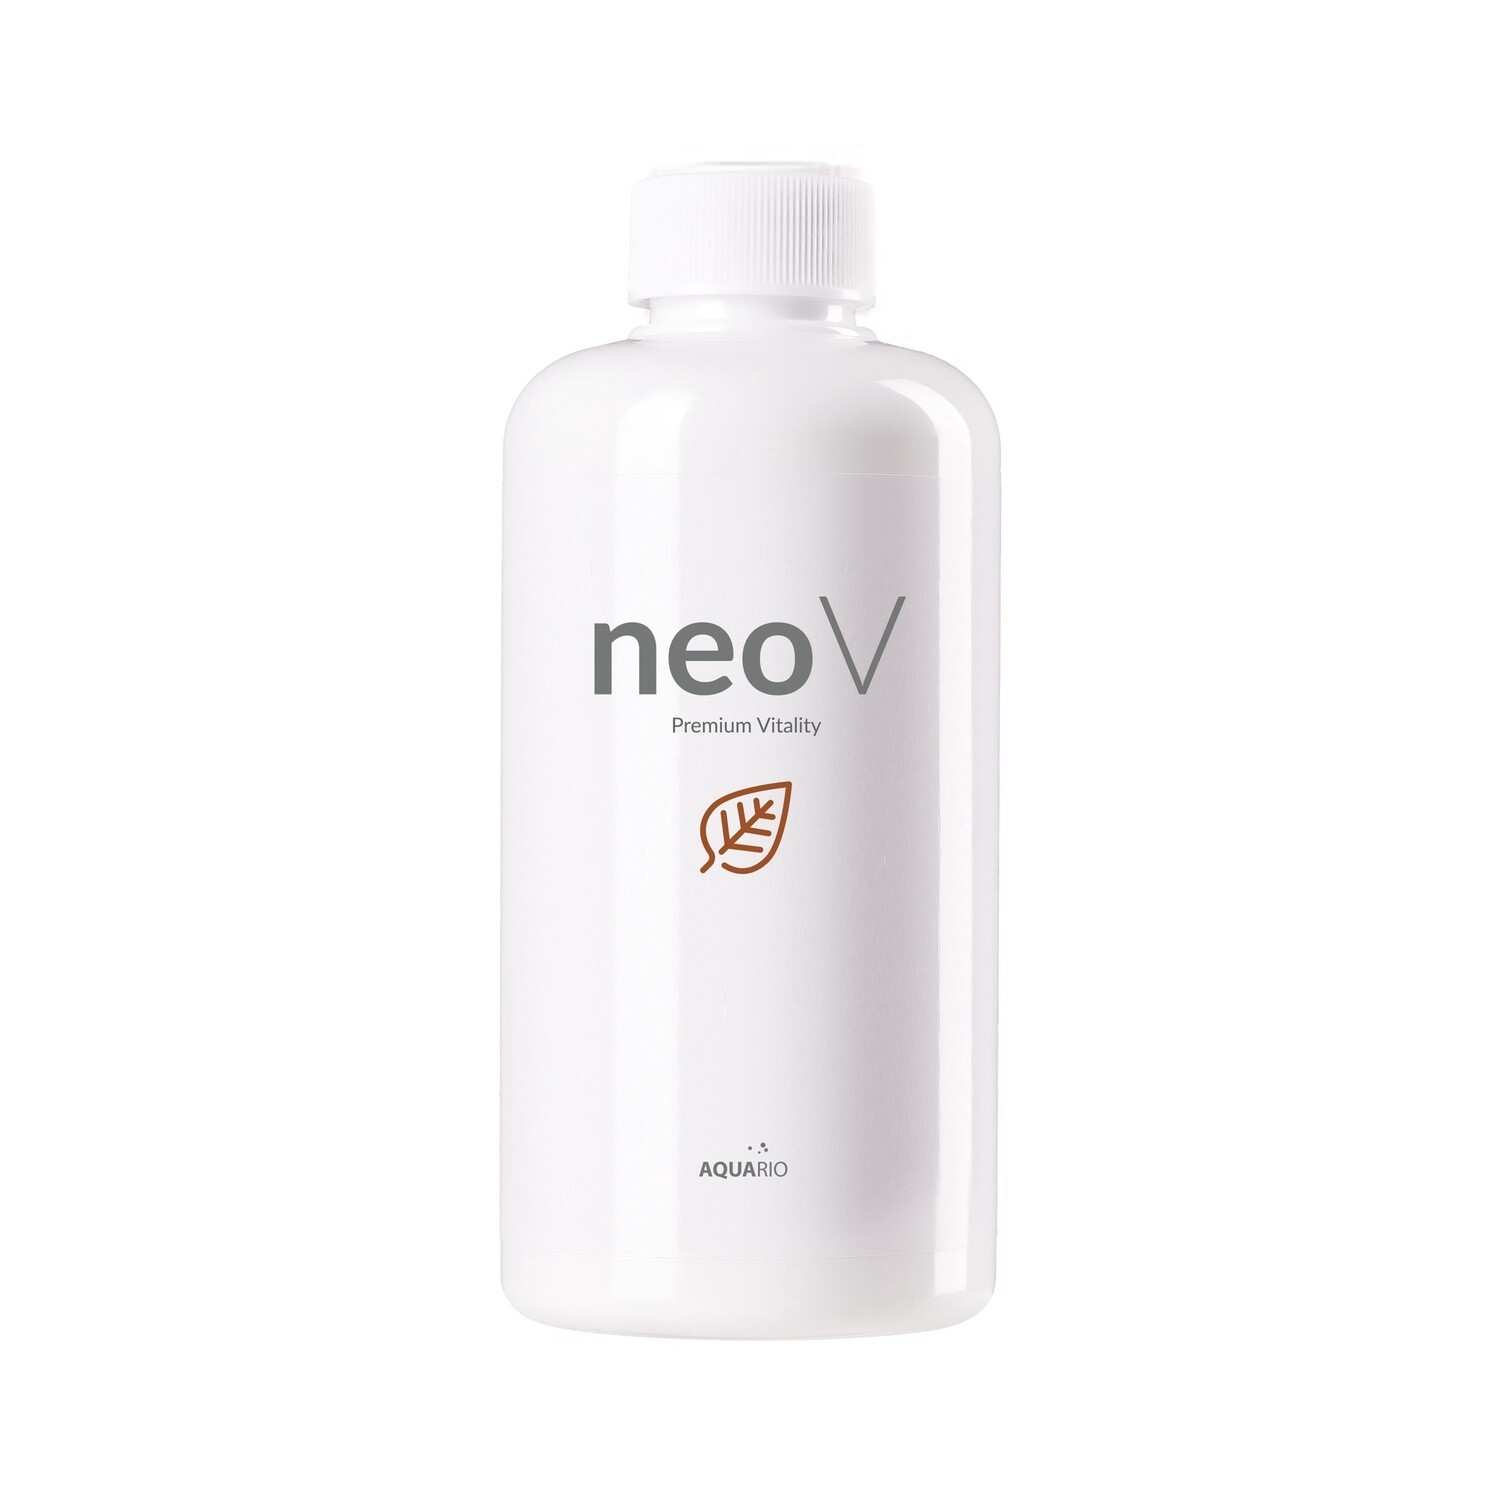 Neo V, volume: neo 300V